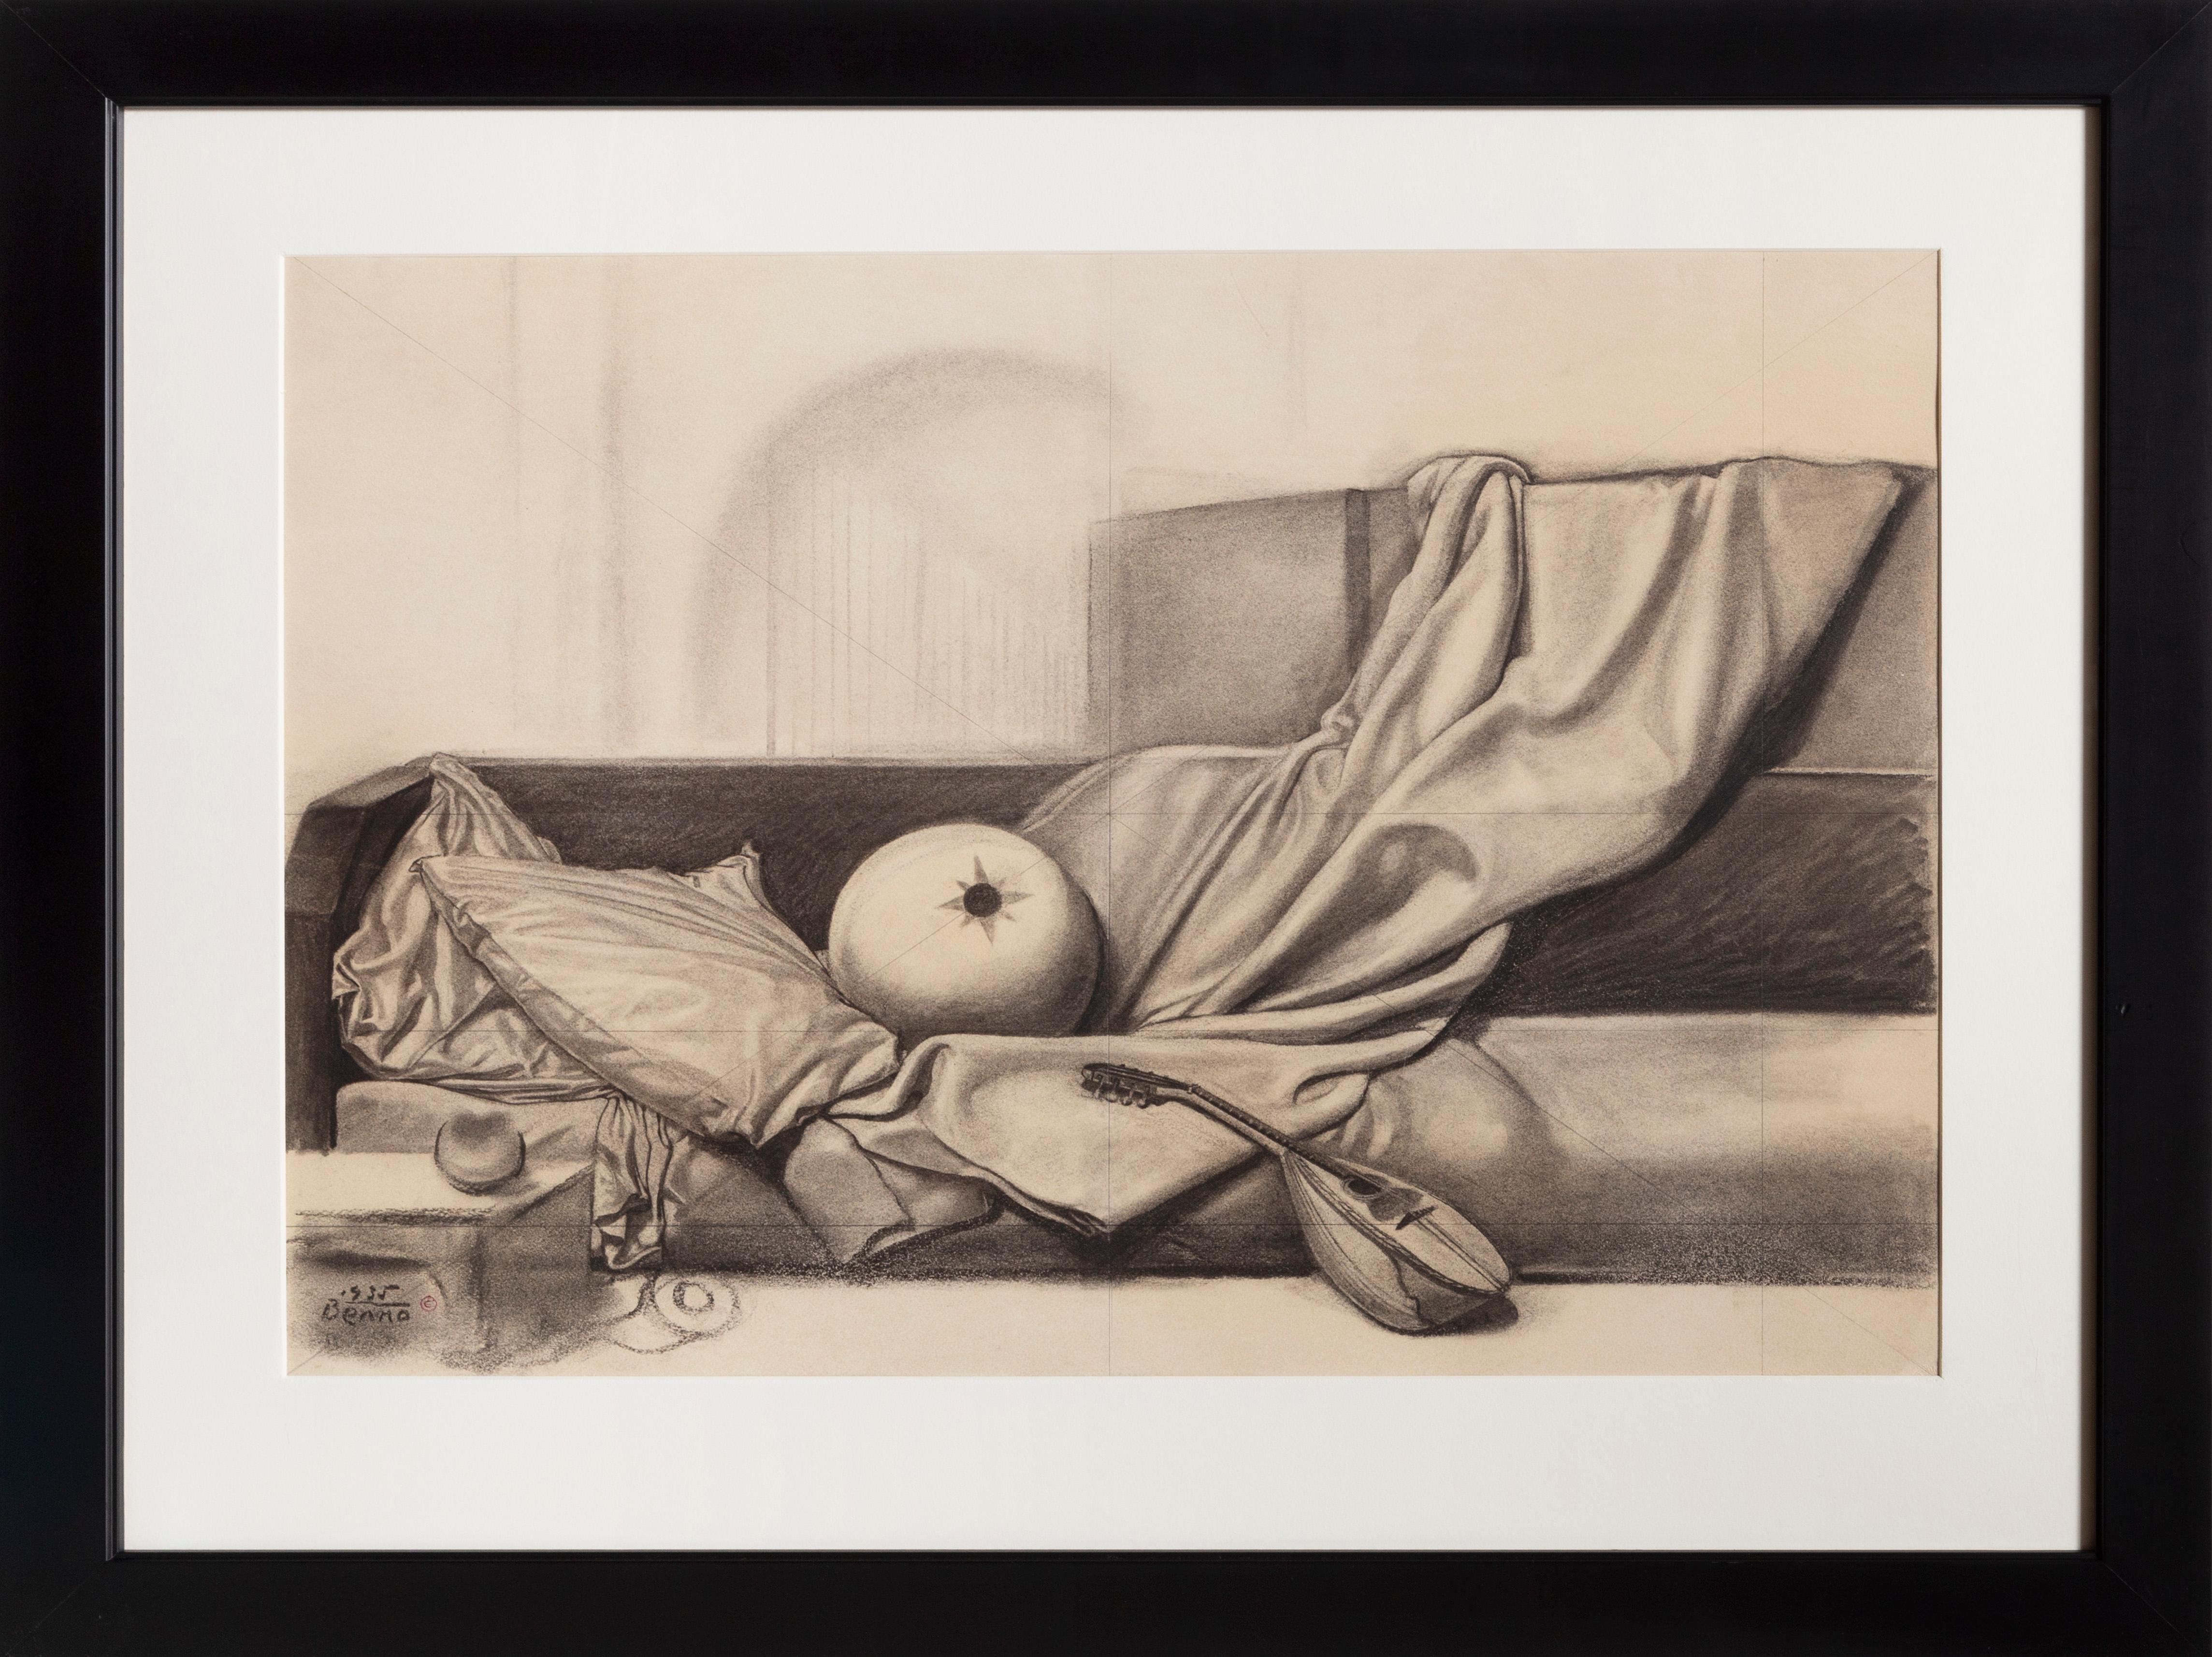 Benjamin G. Benno Abstract Drawing – Odalisch, Surrealistische Kohle auf Papier Zeichnung von Benjamin Benno